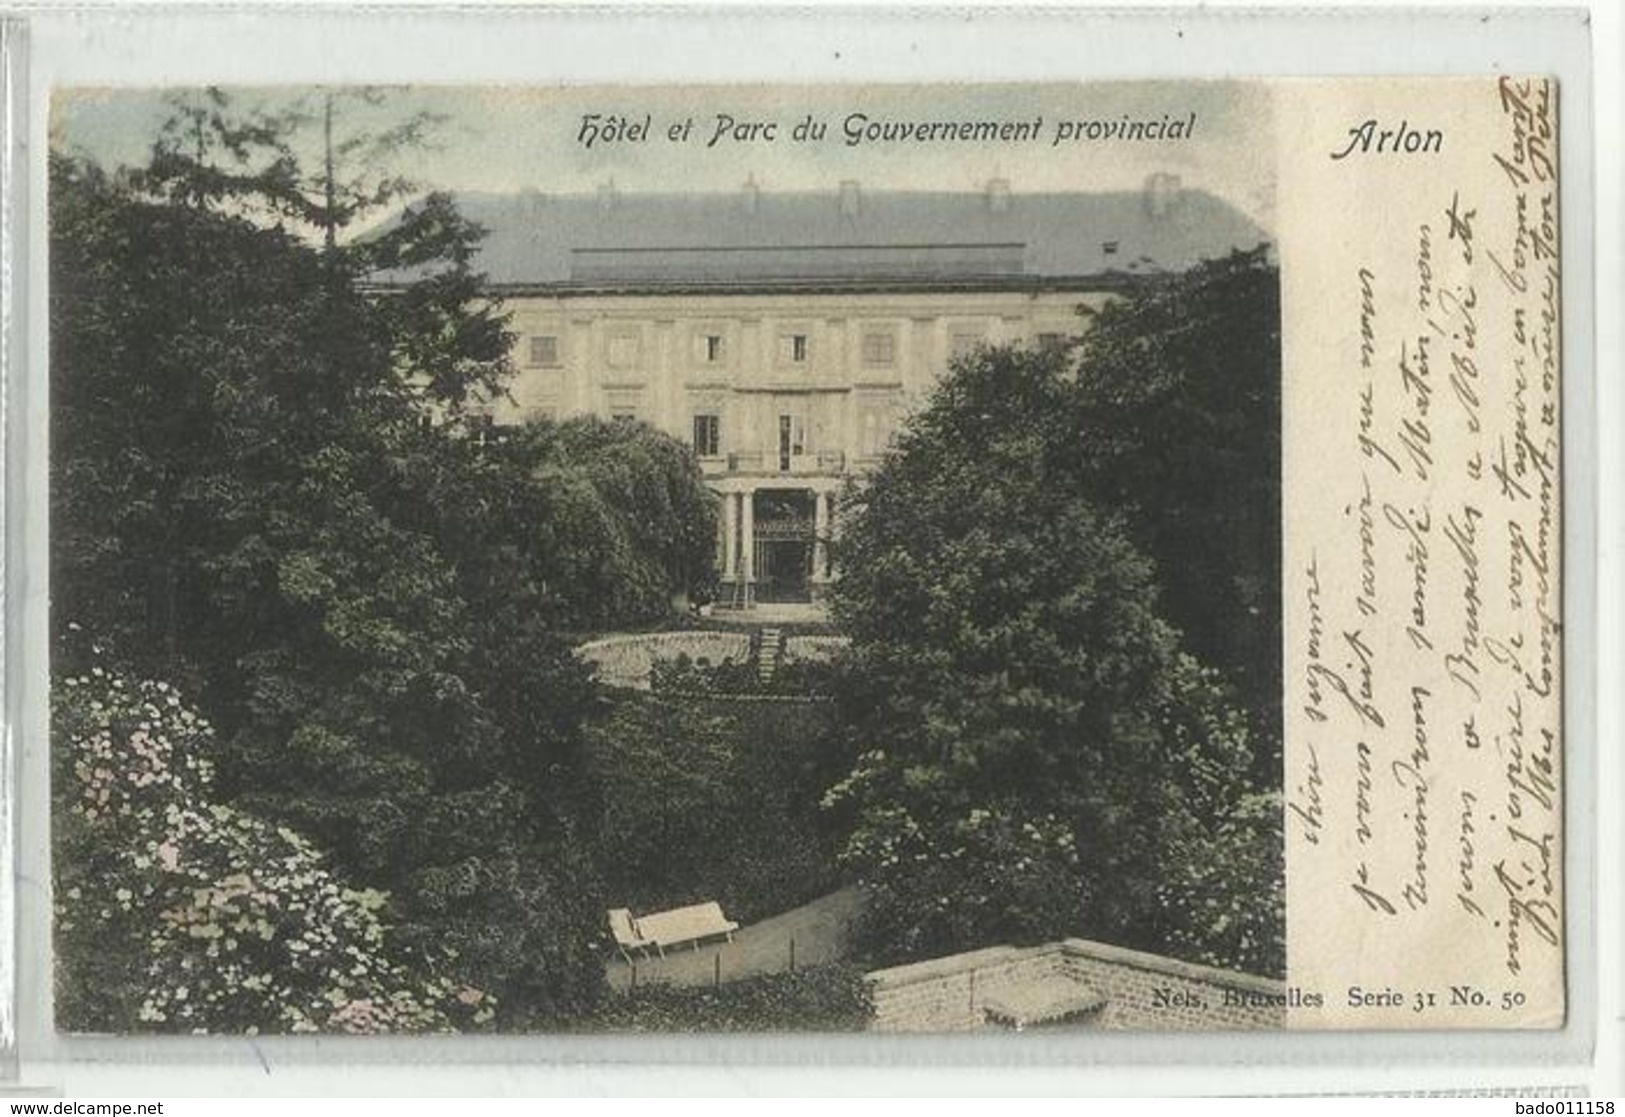 ARLON - Hôtel Et Parc Du Gouvernement Provincial - Nels 31 N° 50 Couleurs - Arlon